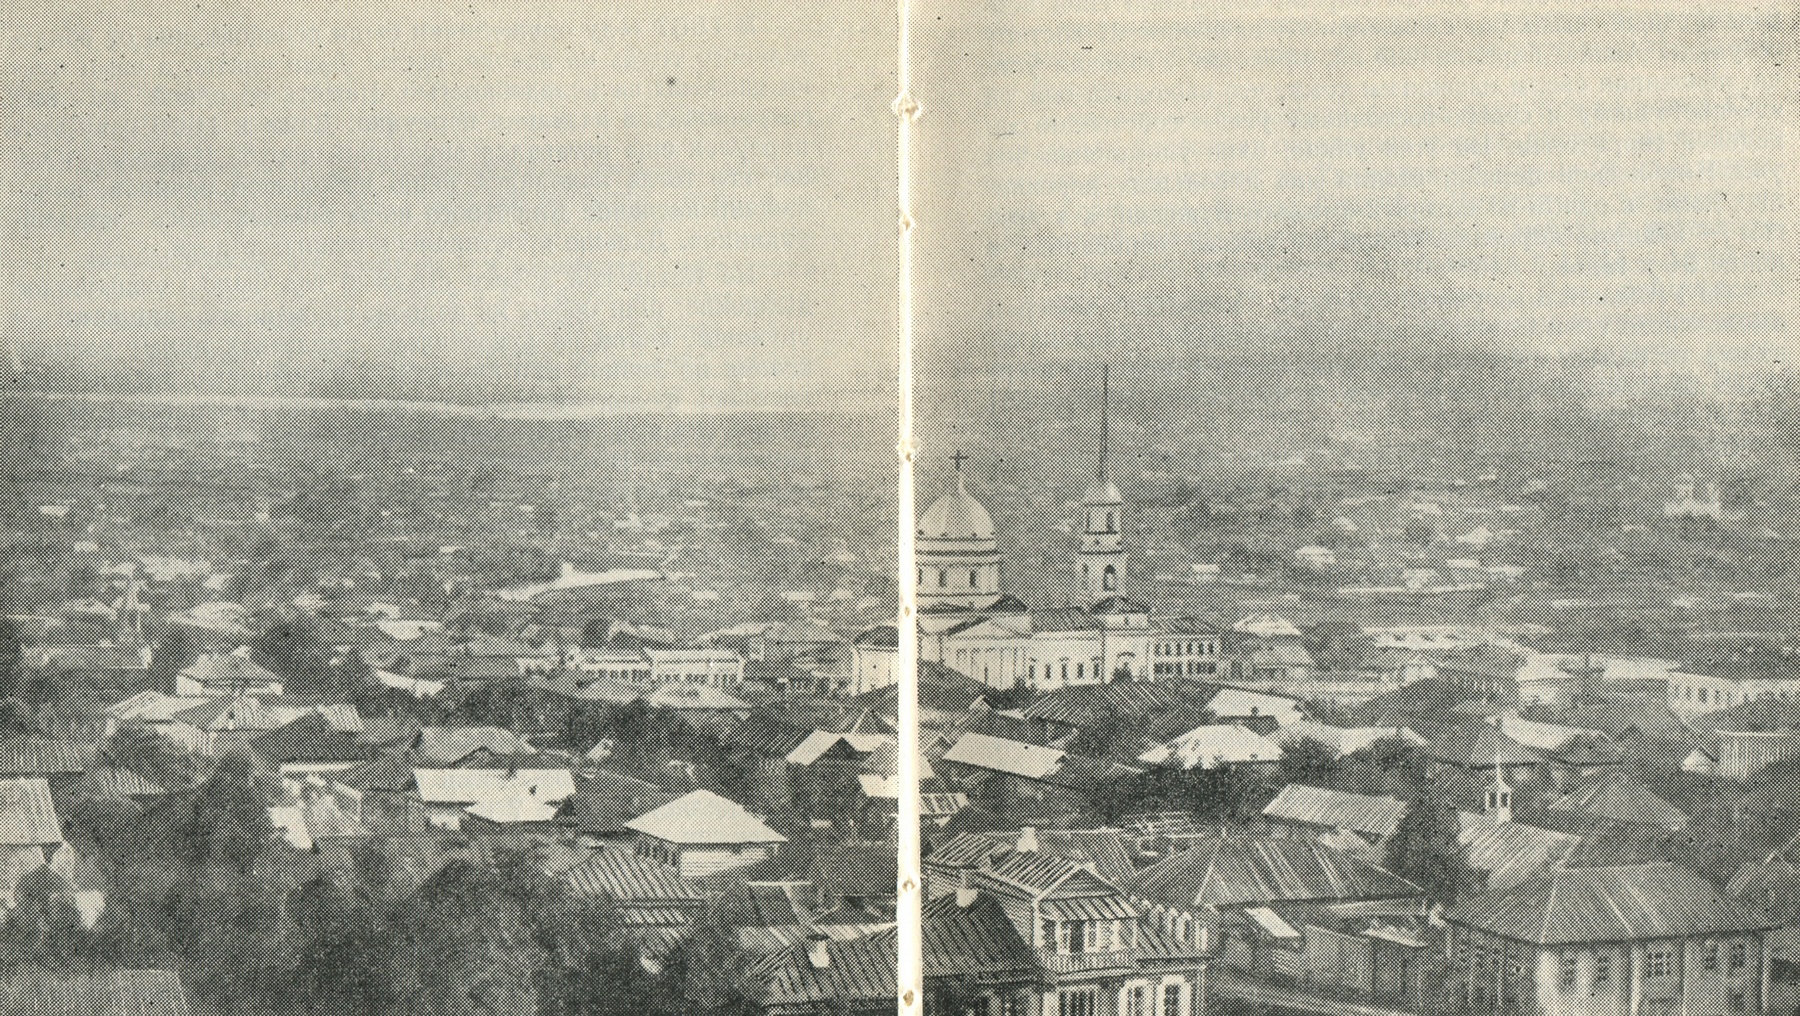 Россыпь приземистых строений, среди которых Александро-Невский собор высится монументальным зданием, — так выглядела в 1880 году центральная часть поселка Ижевский завод.